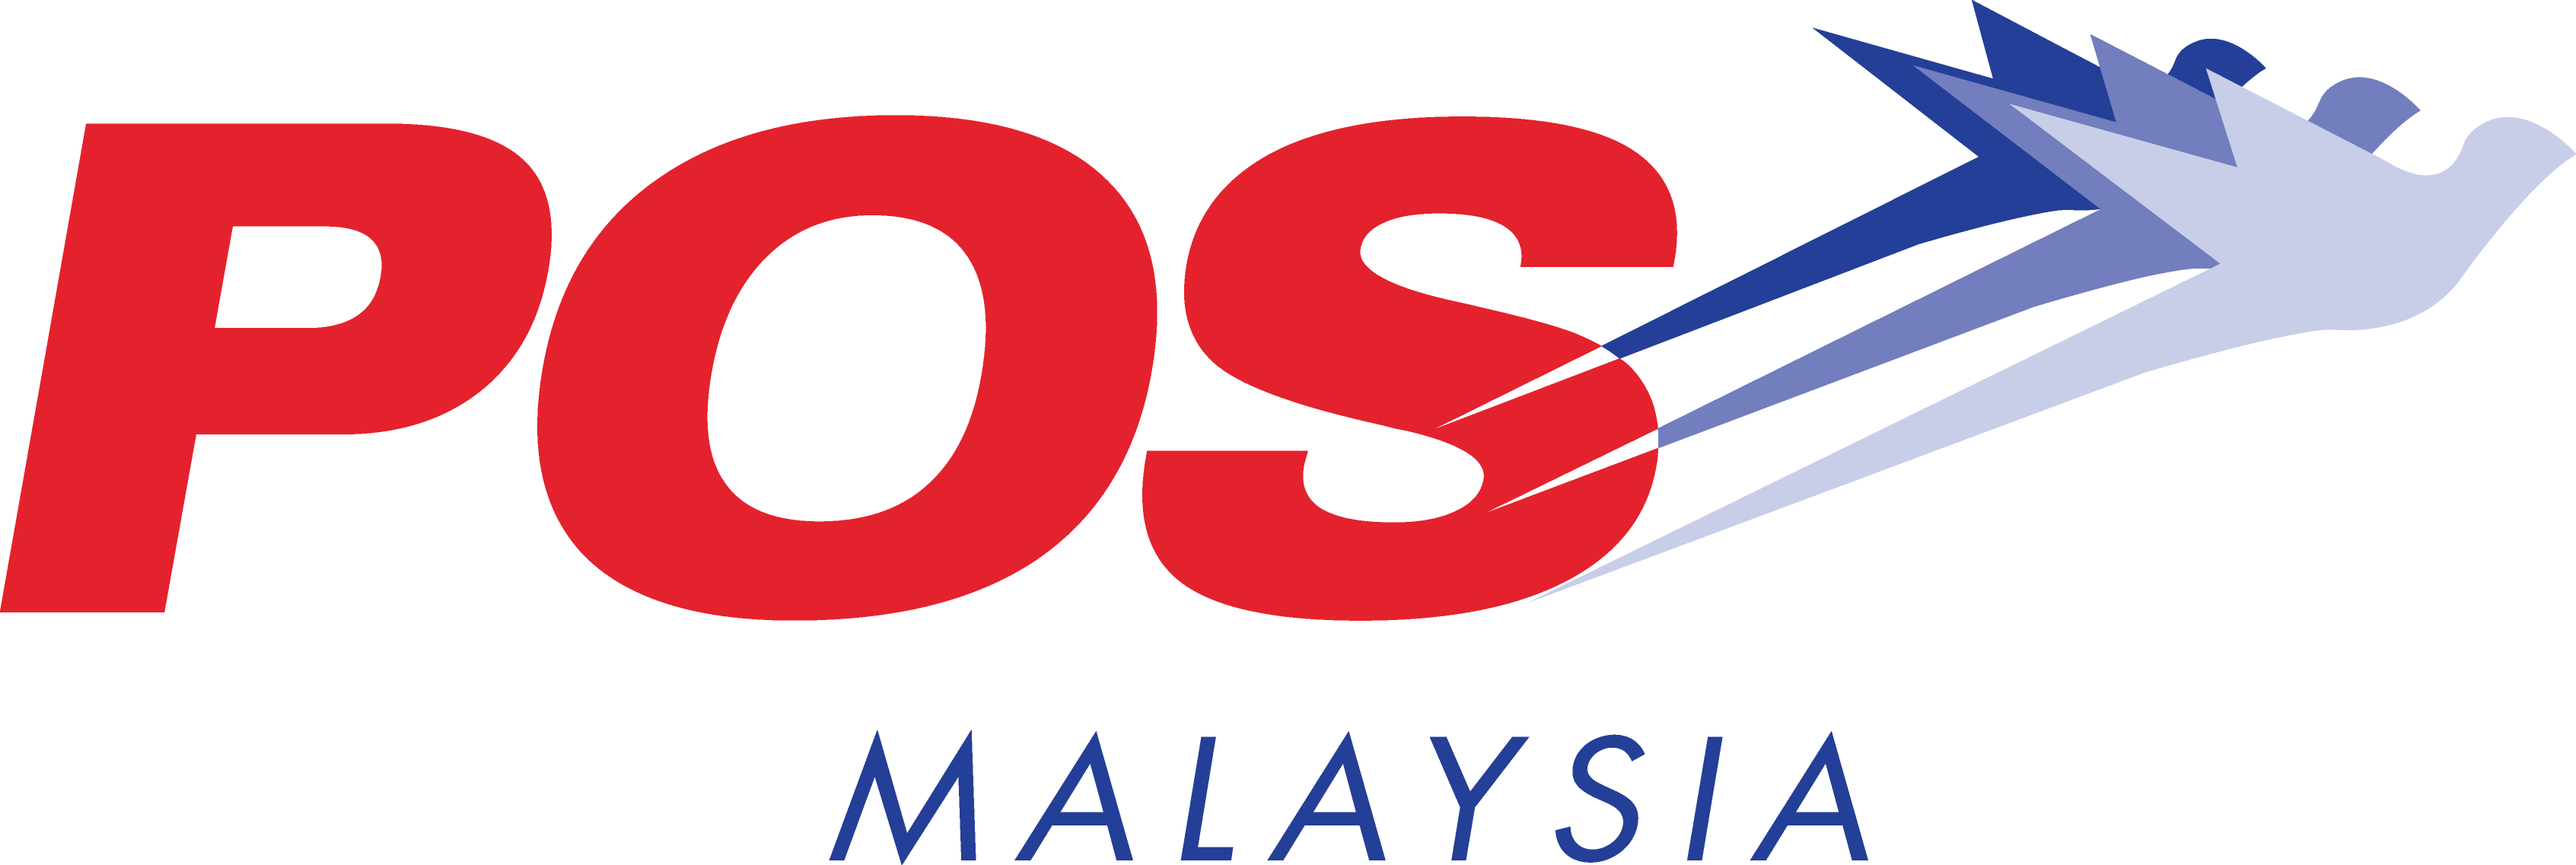 Pos - Pos Malaysia (3385x1137)